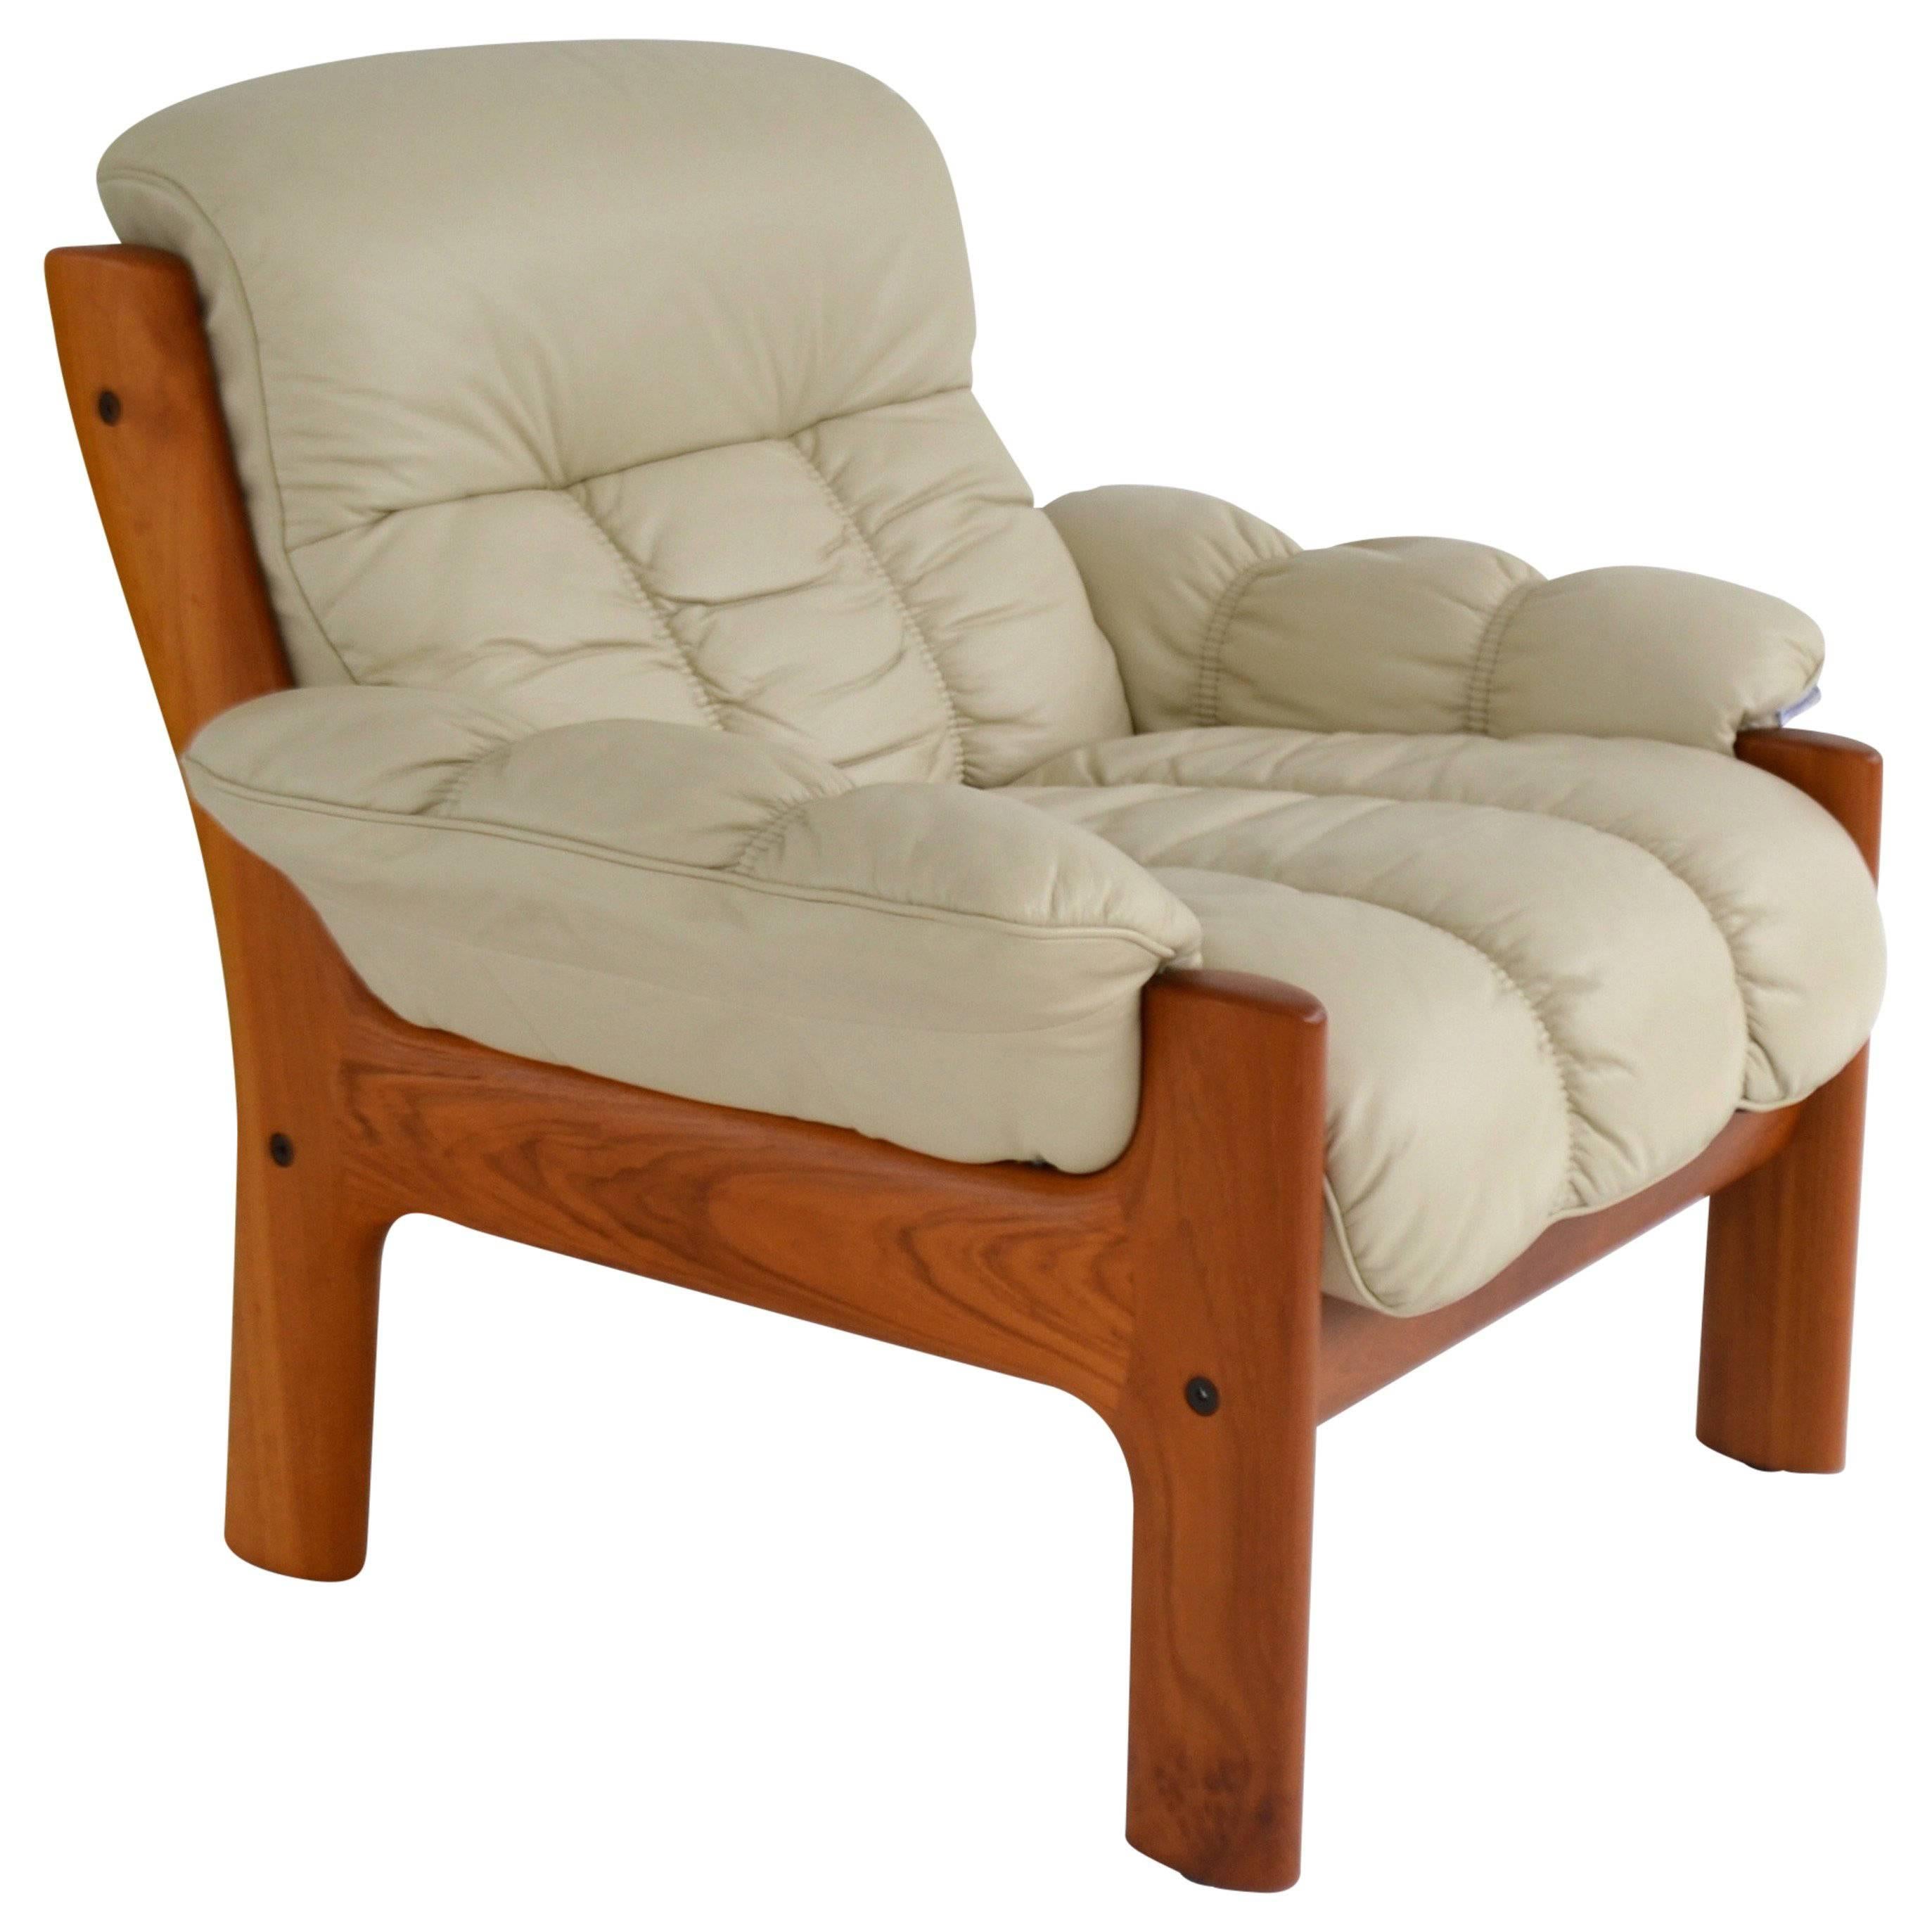 Postmodern Leather and Teak Club Chair by J. E. Ekornes